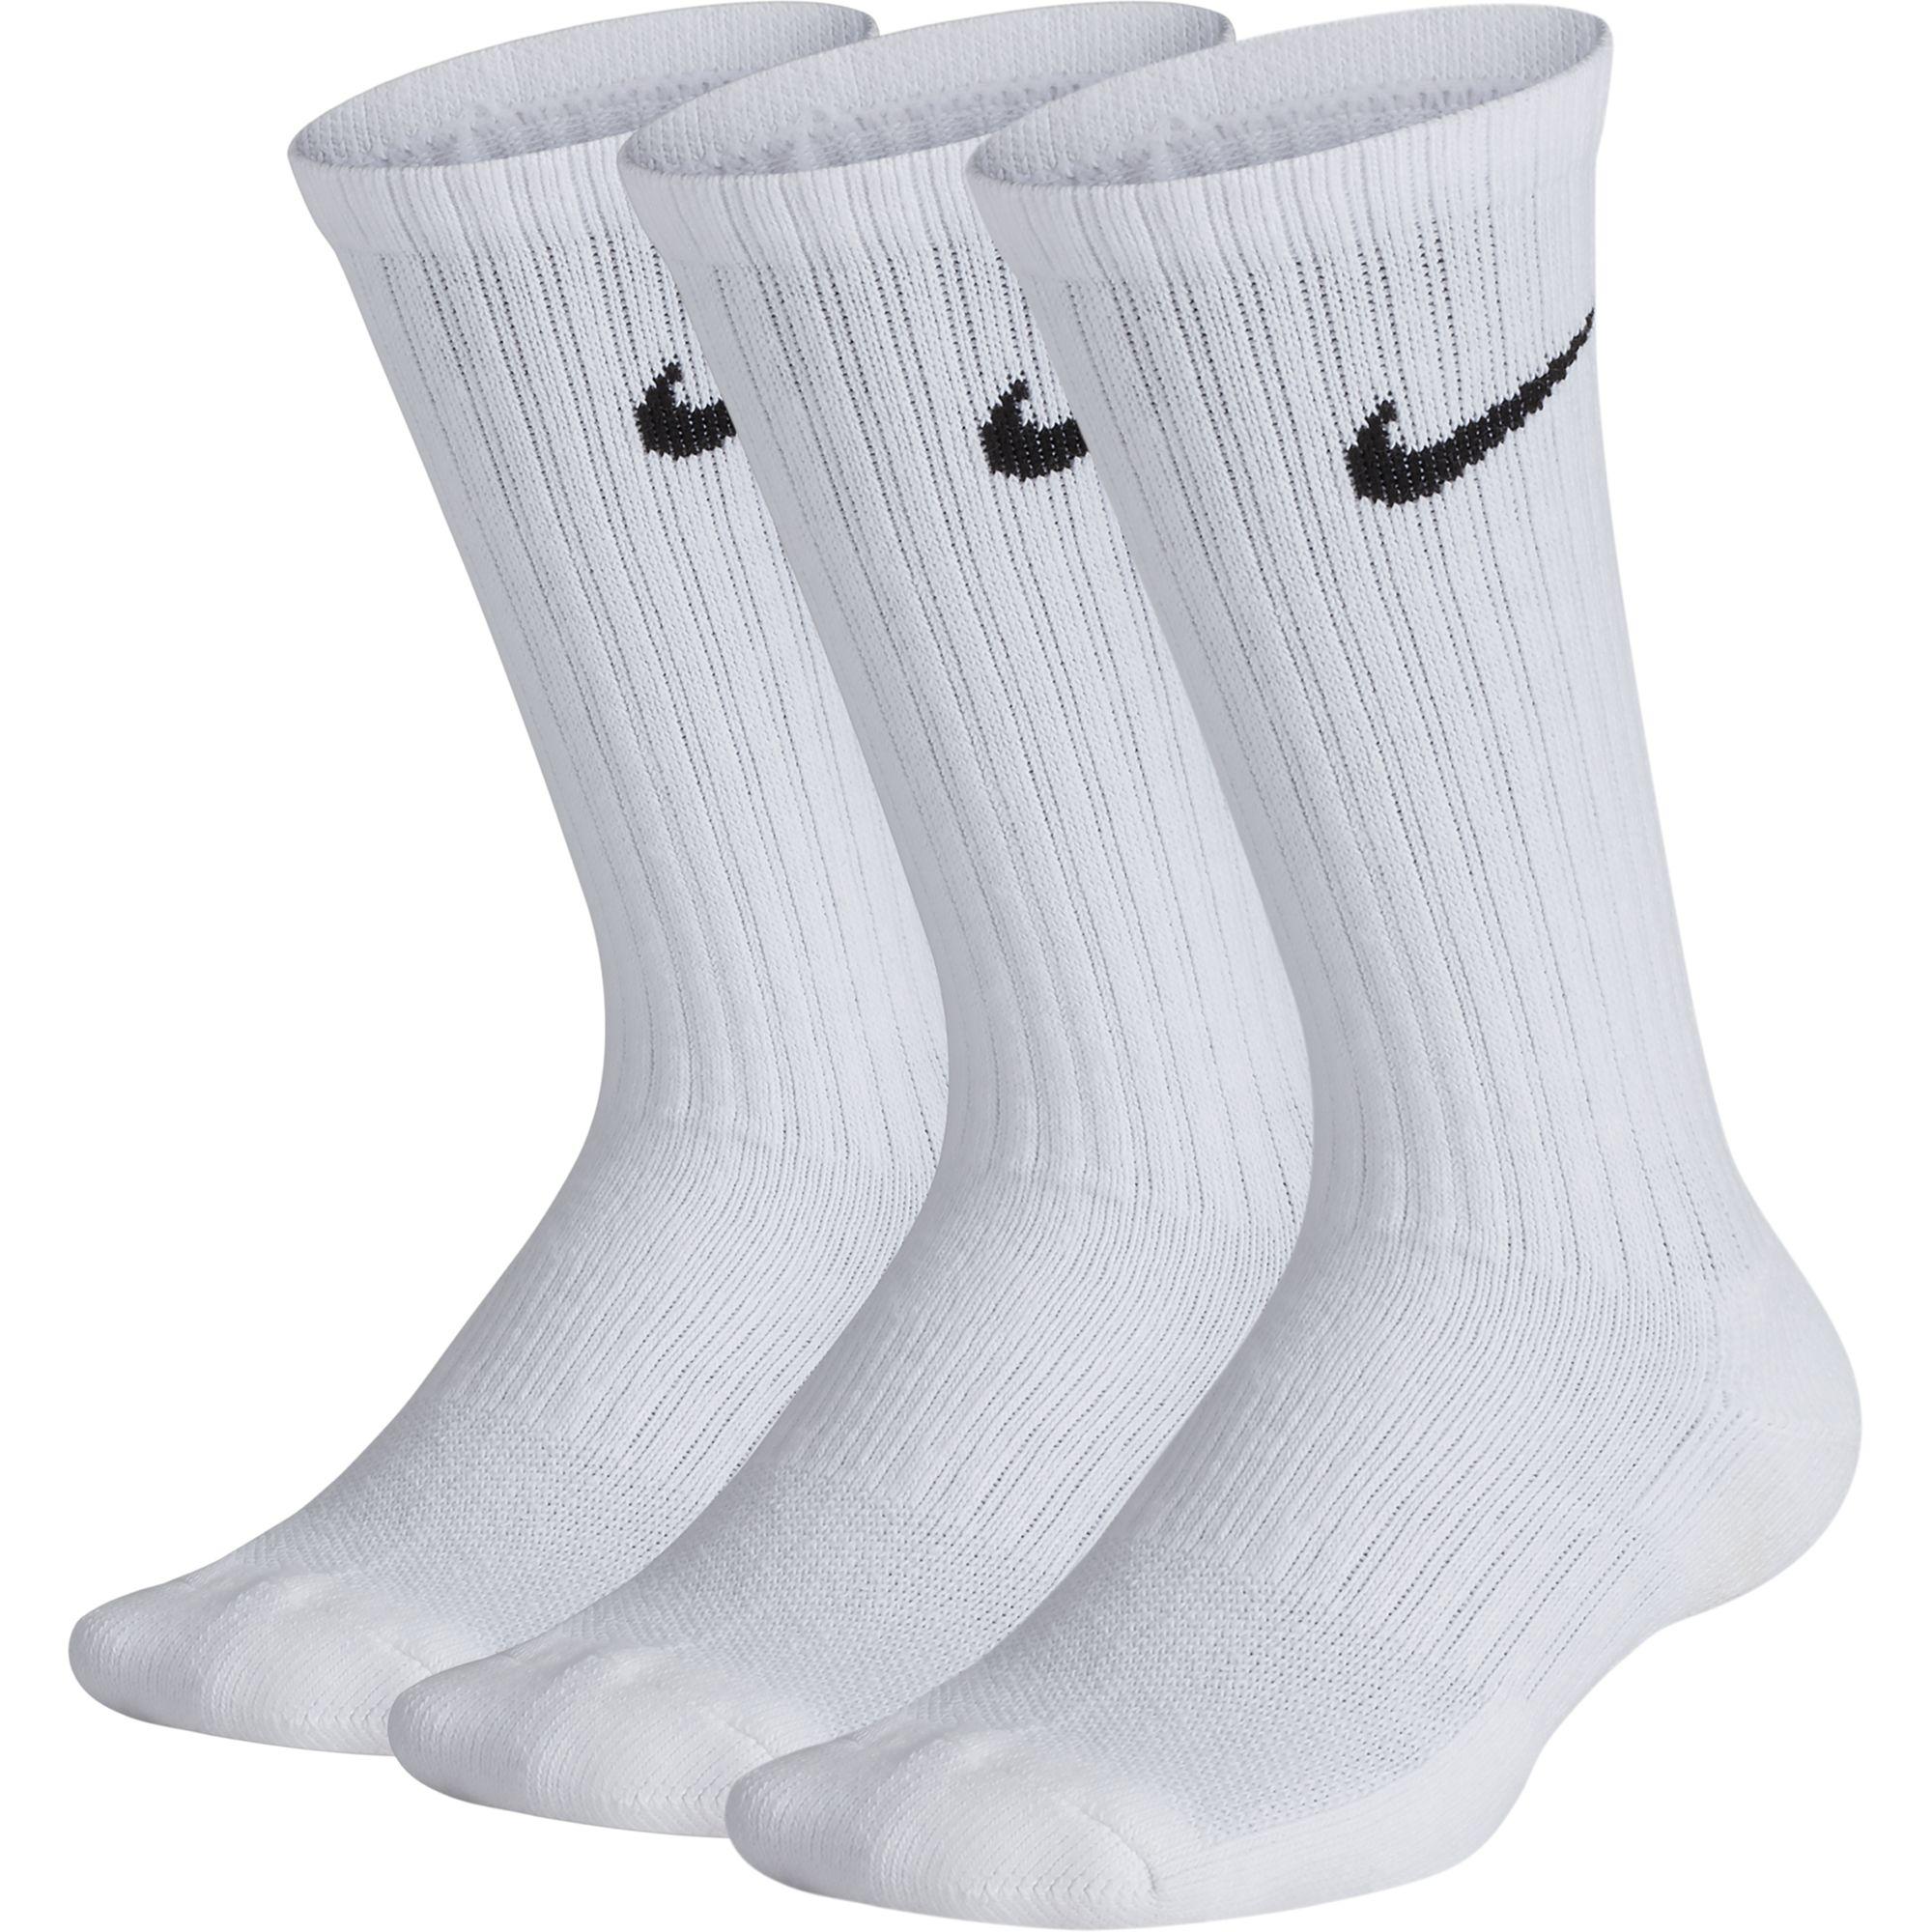 nike performance cushion socks